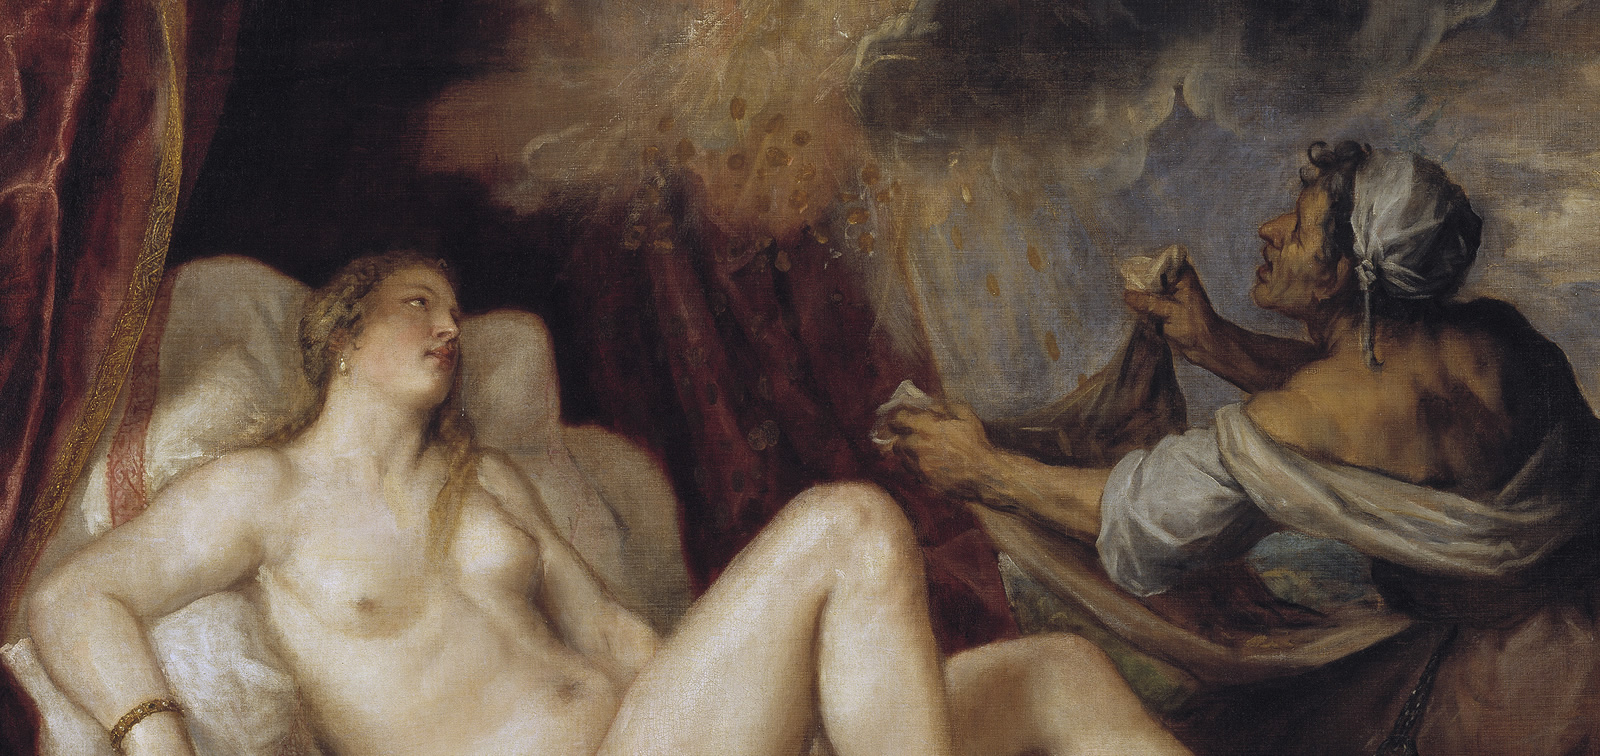 Titian: Danaë, Venus and Adonis. The early poesie